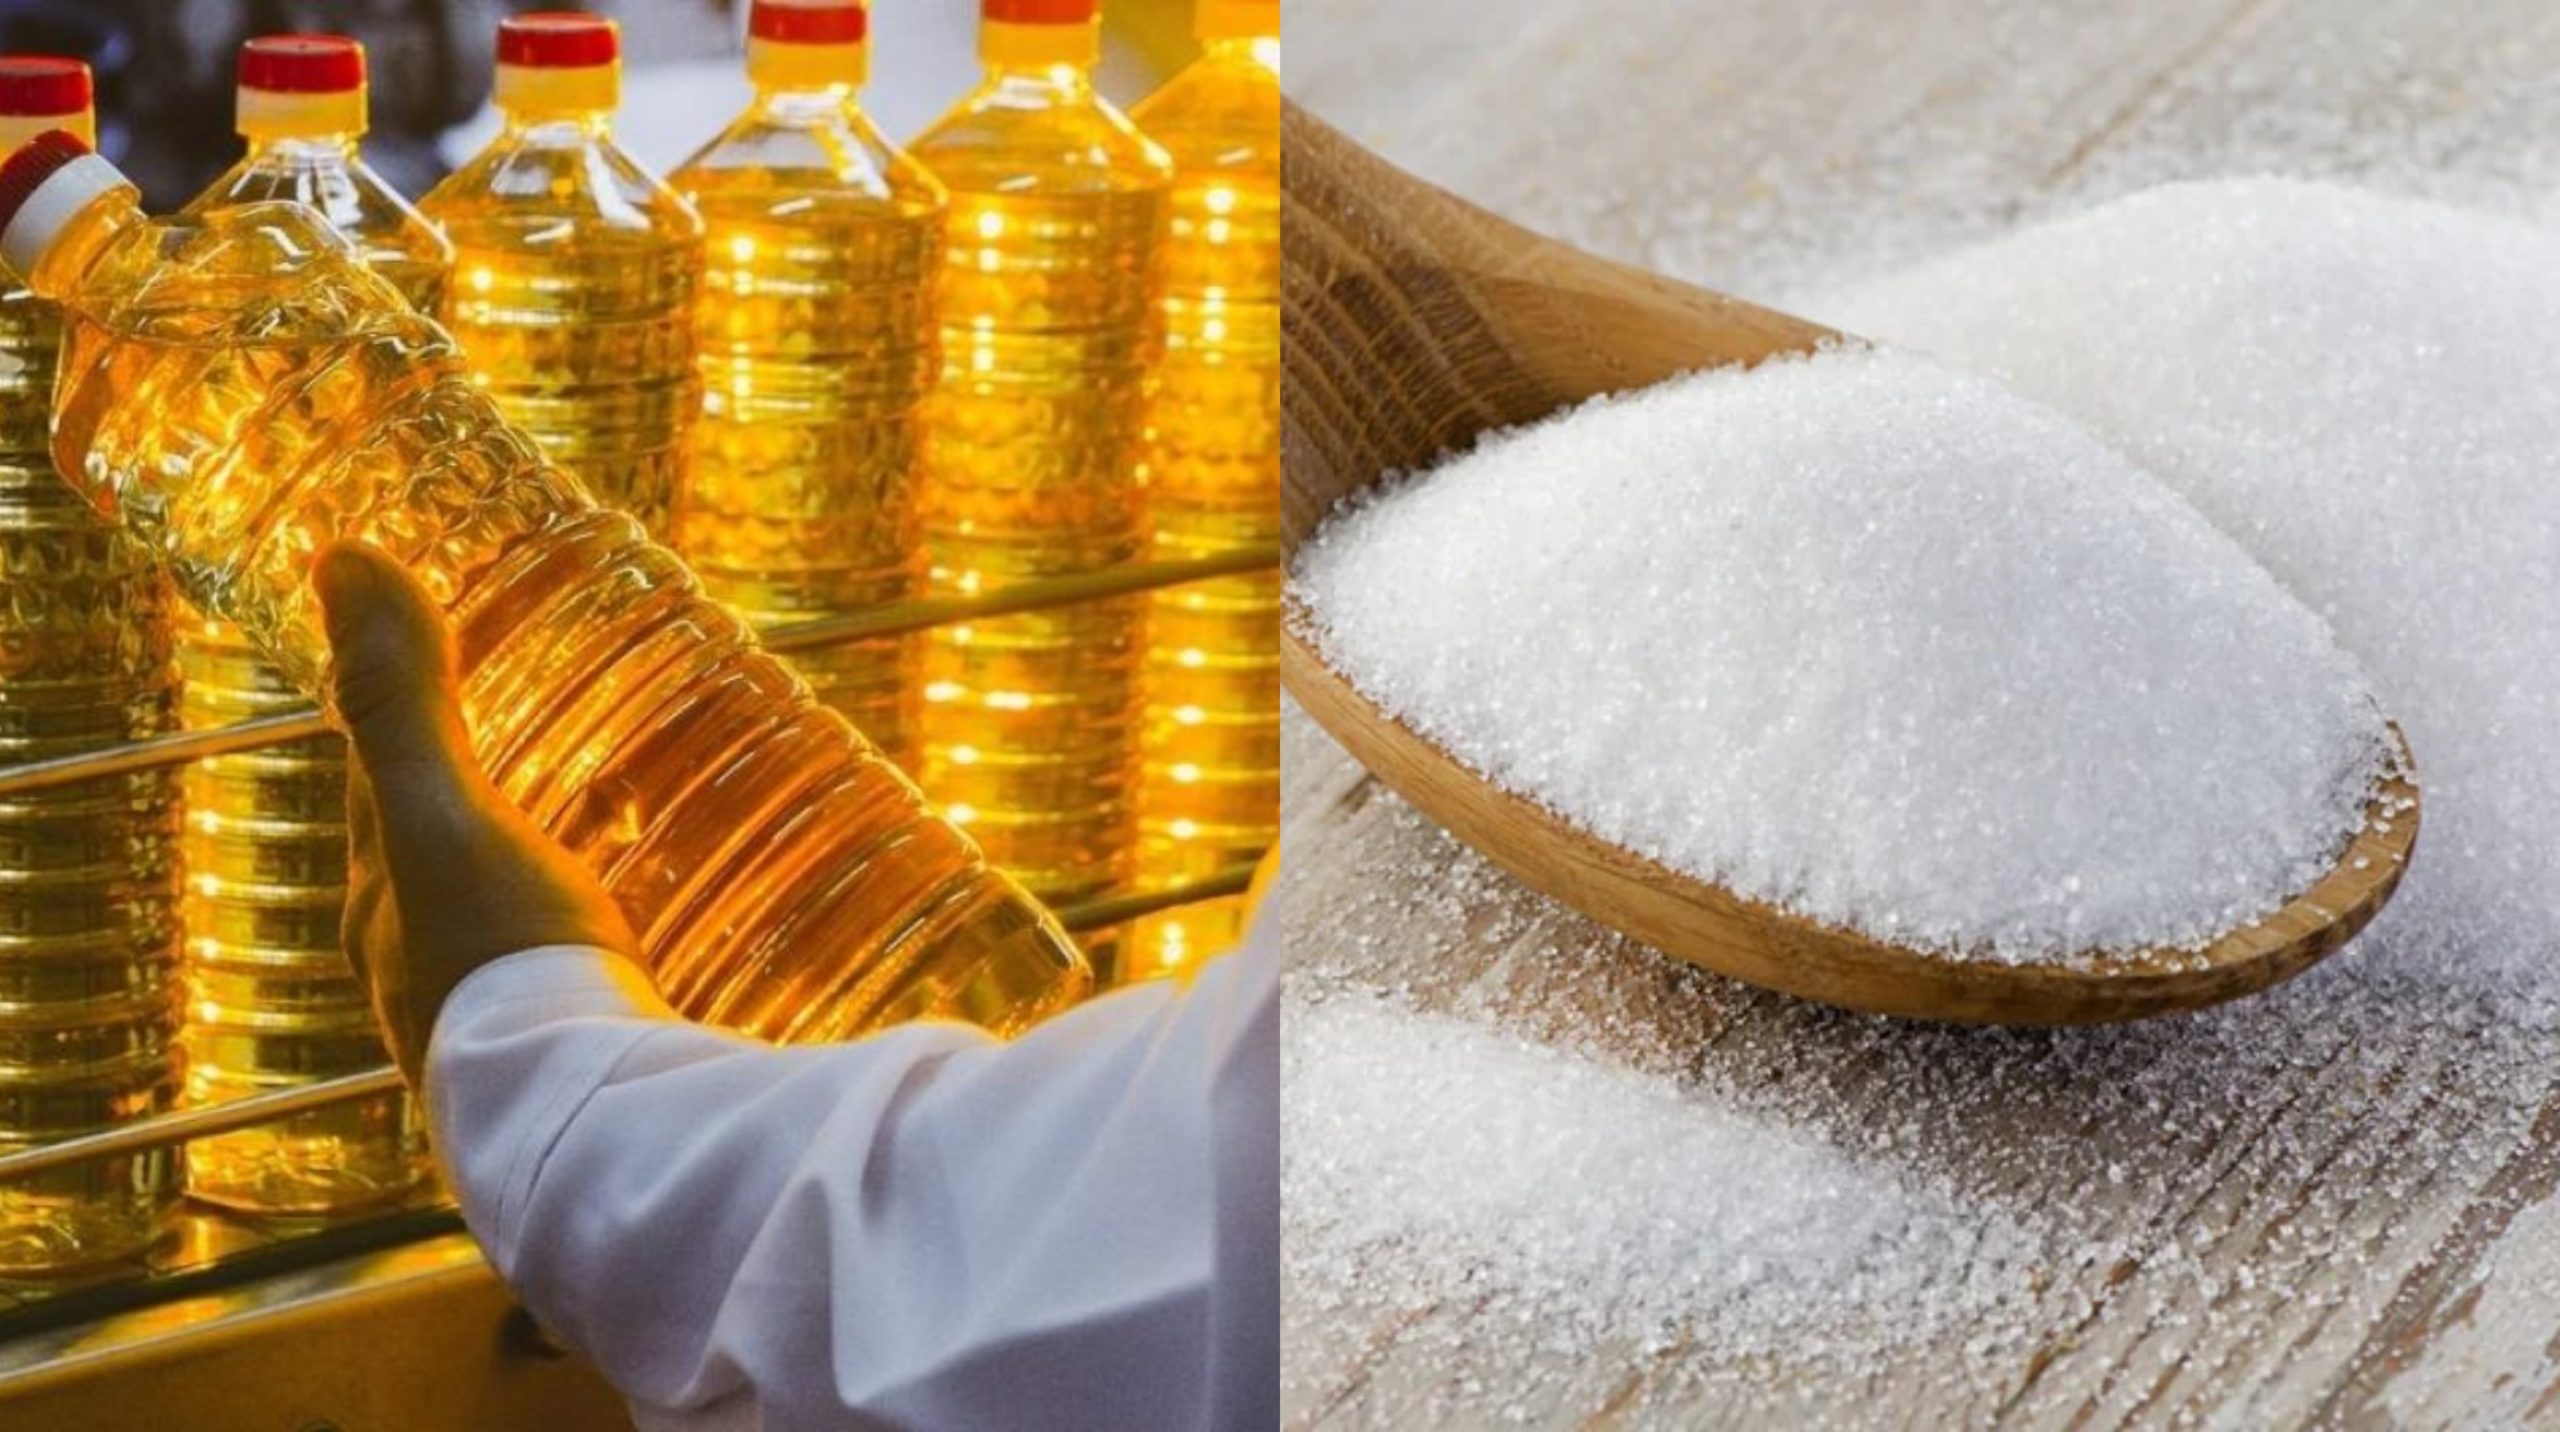 السكر بكام.. تعرف علي أسعار السكر والمنتجات الغذائية في مصر